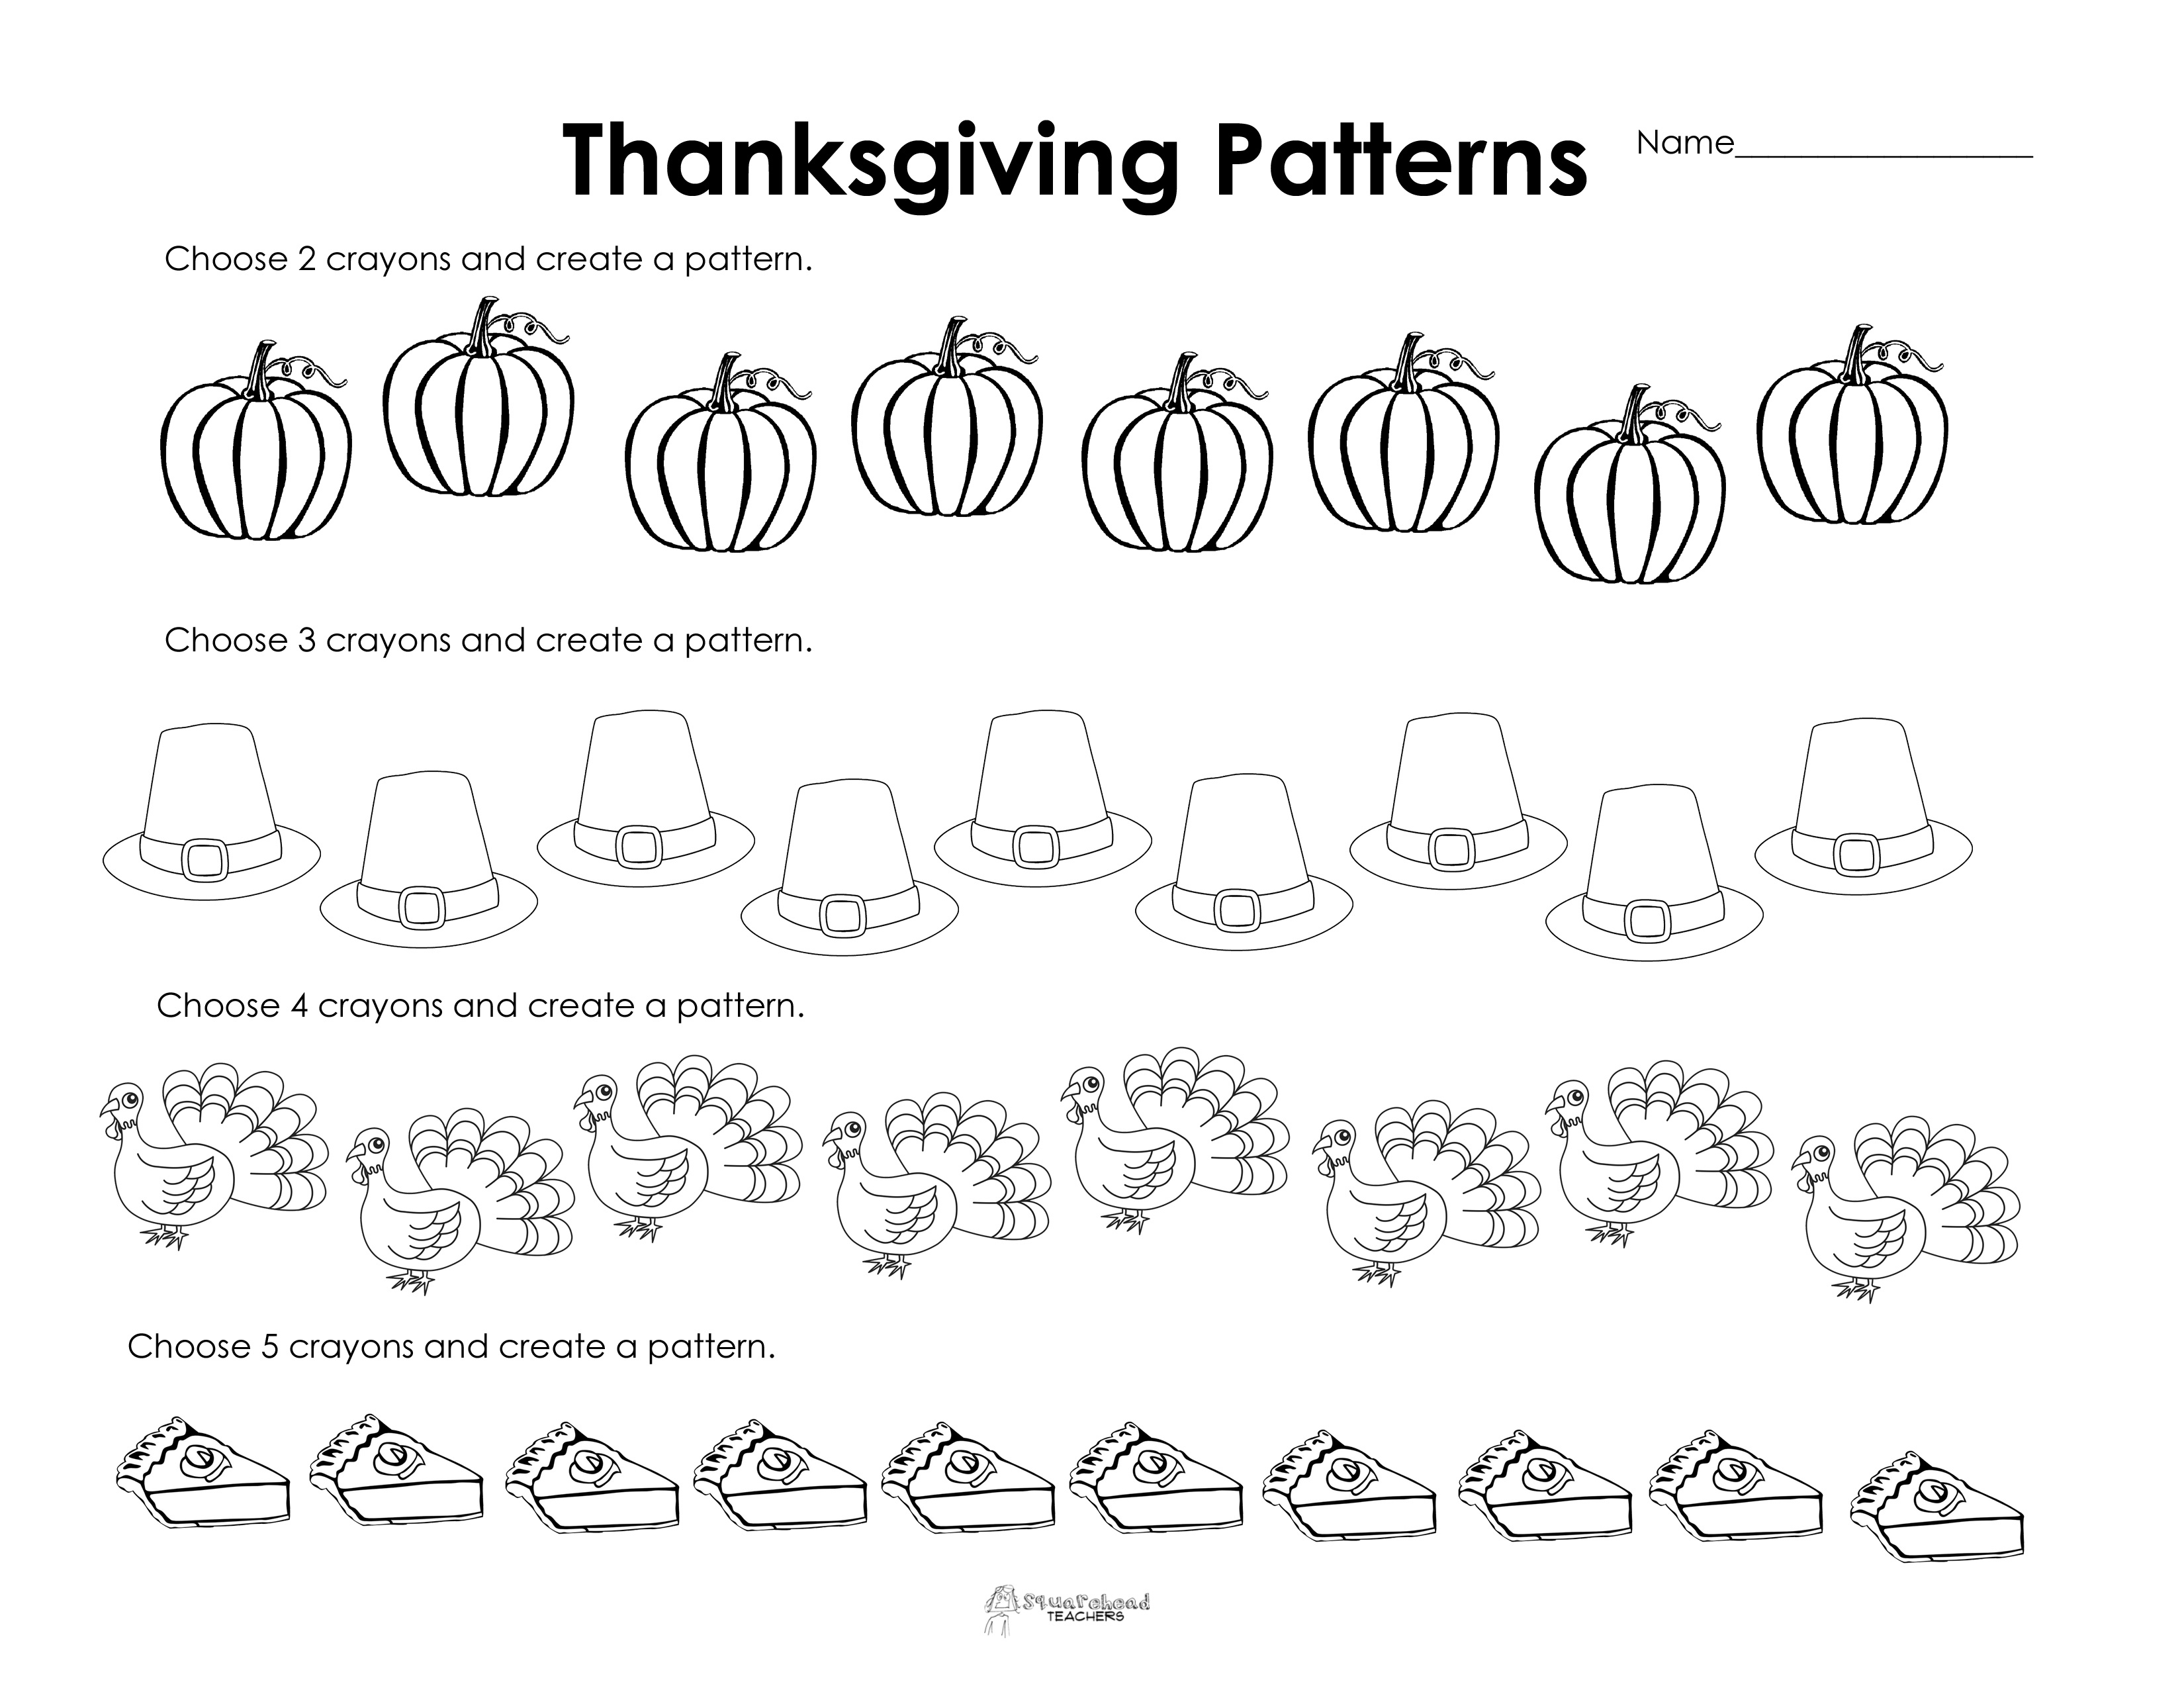 Making Patterns: Thanksgiving Style (Free Worksheet!) | Squarehead - Free Printable Thanksgiving Worksheets